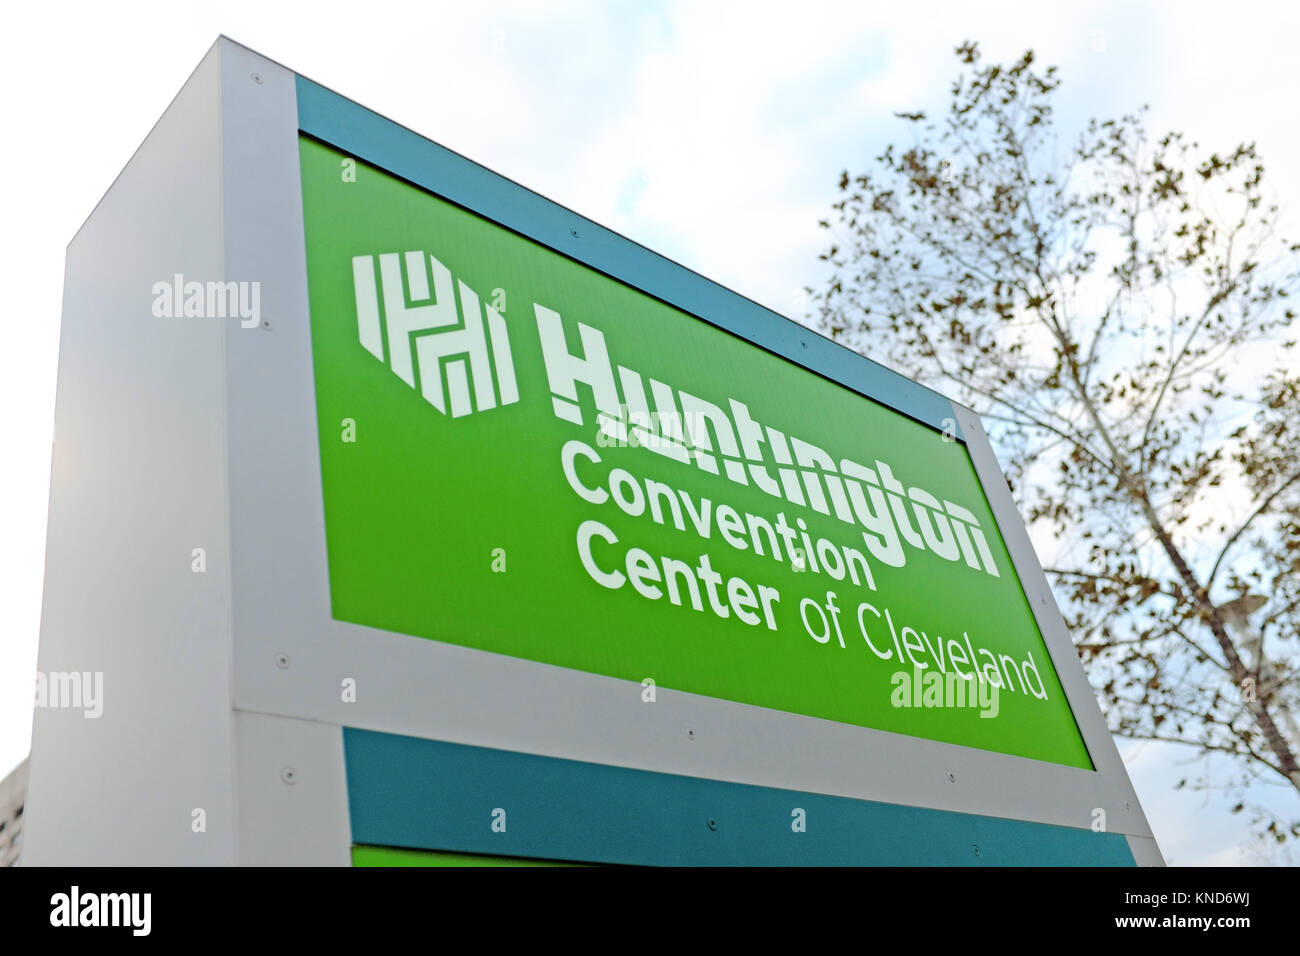 Il morbo di Huntington Convention Center di Cleveland, sponsorizzato da Huntington Banca, si trova nel centro cittadino di Cleveland, Ohio, USA. Foto Stock